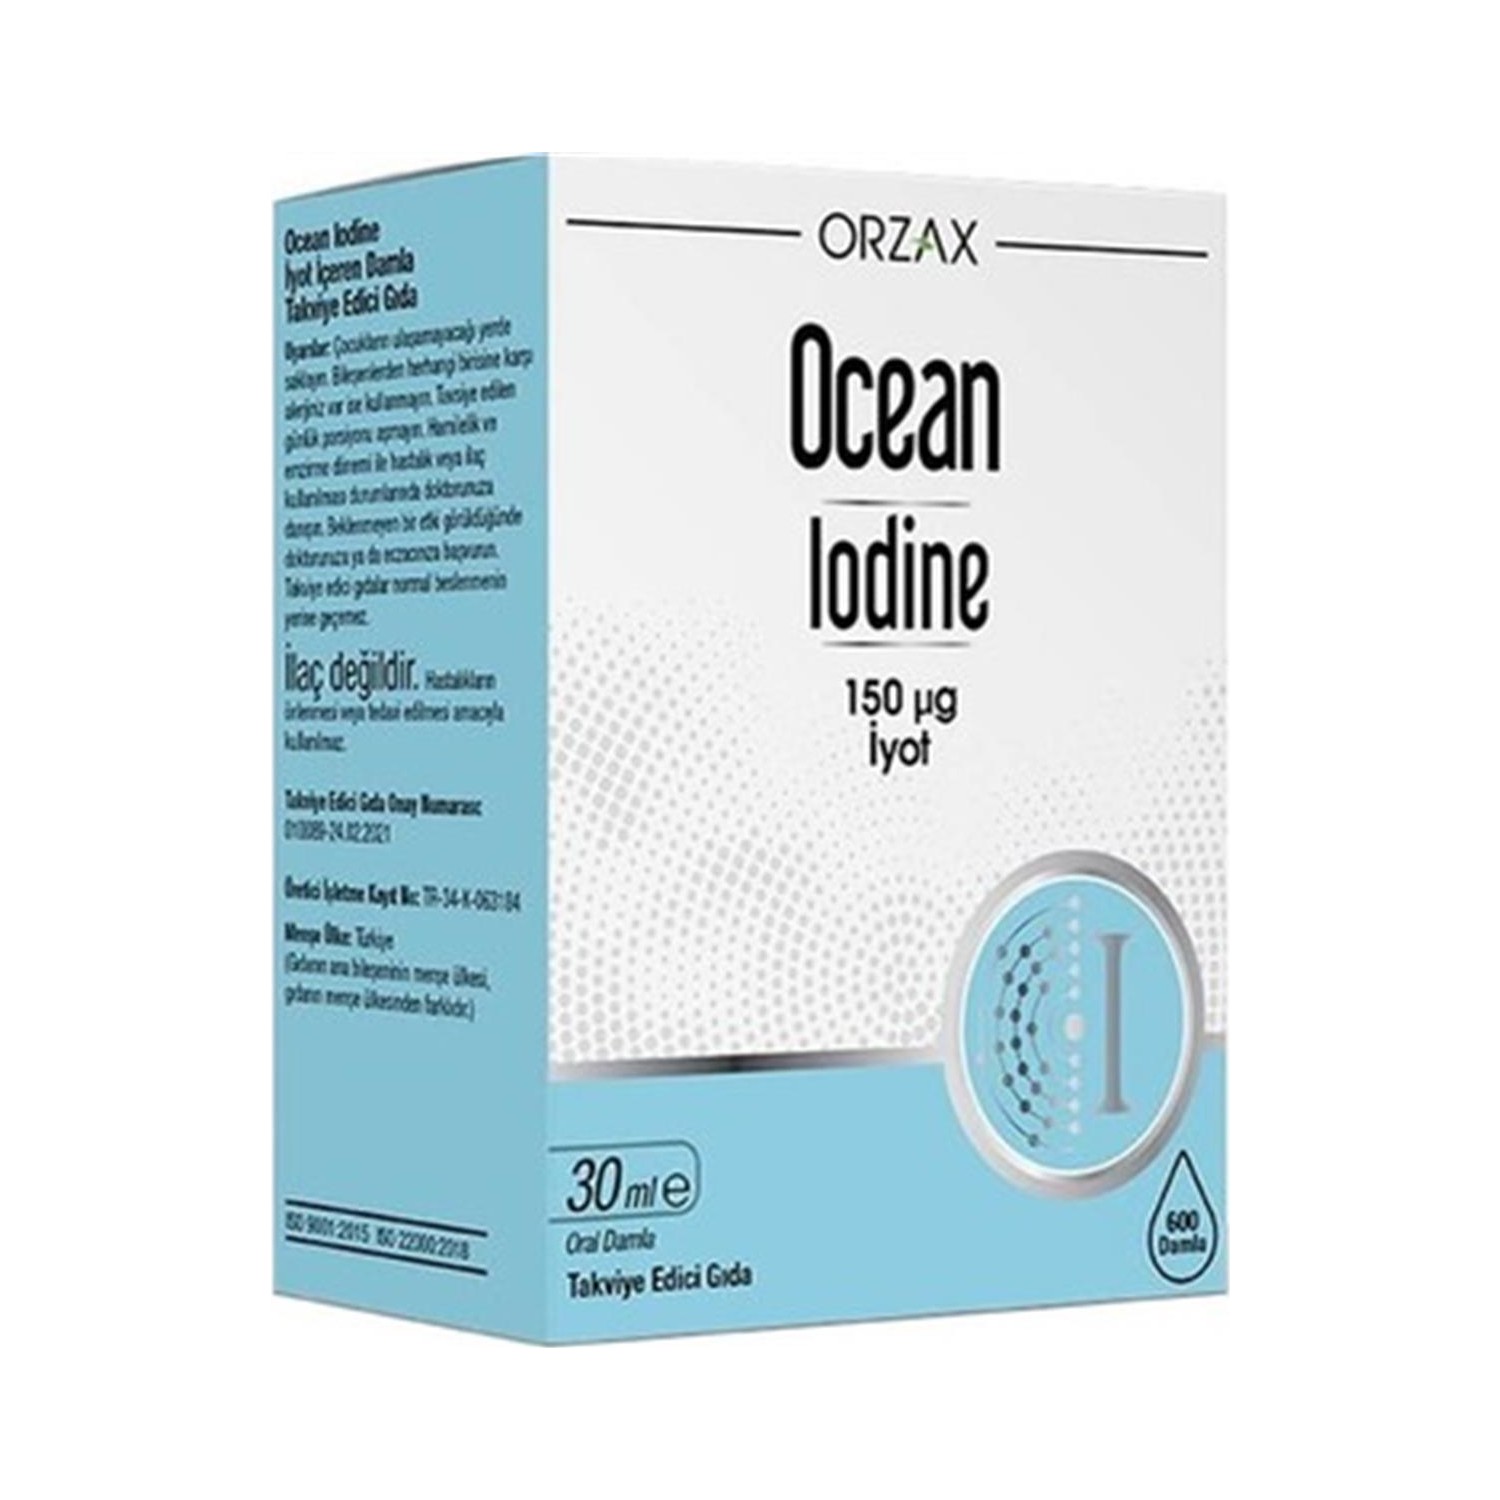 Океан йод. Ocean Iodine 150 MCG Damla 30 ml. Orzax Ocean Iodine 150. Orzax Ocean Iodine 150 MCG 30 ml Drop. Йод капли Orzax.